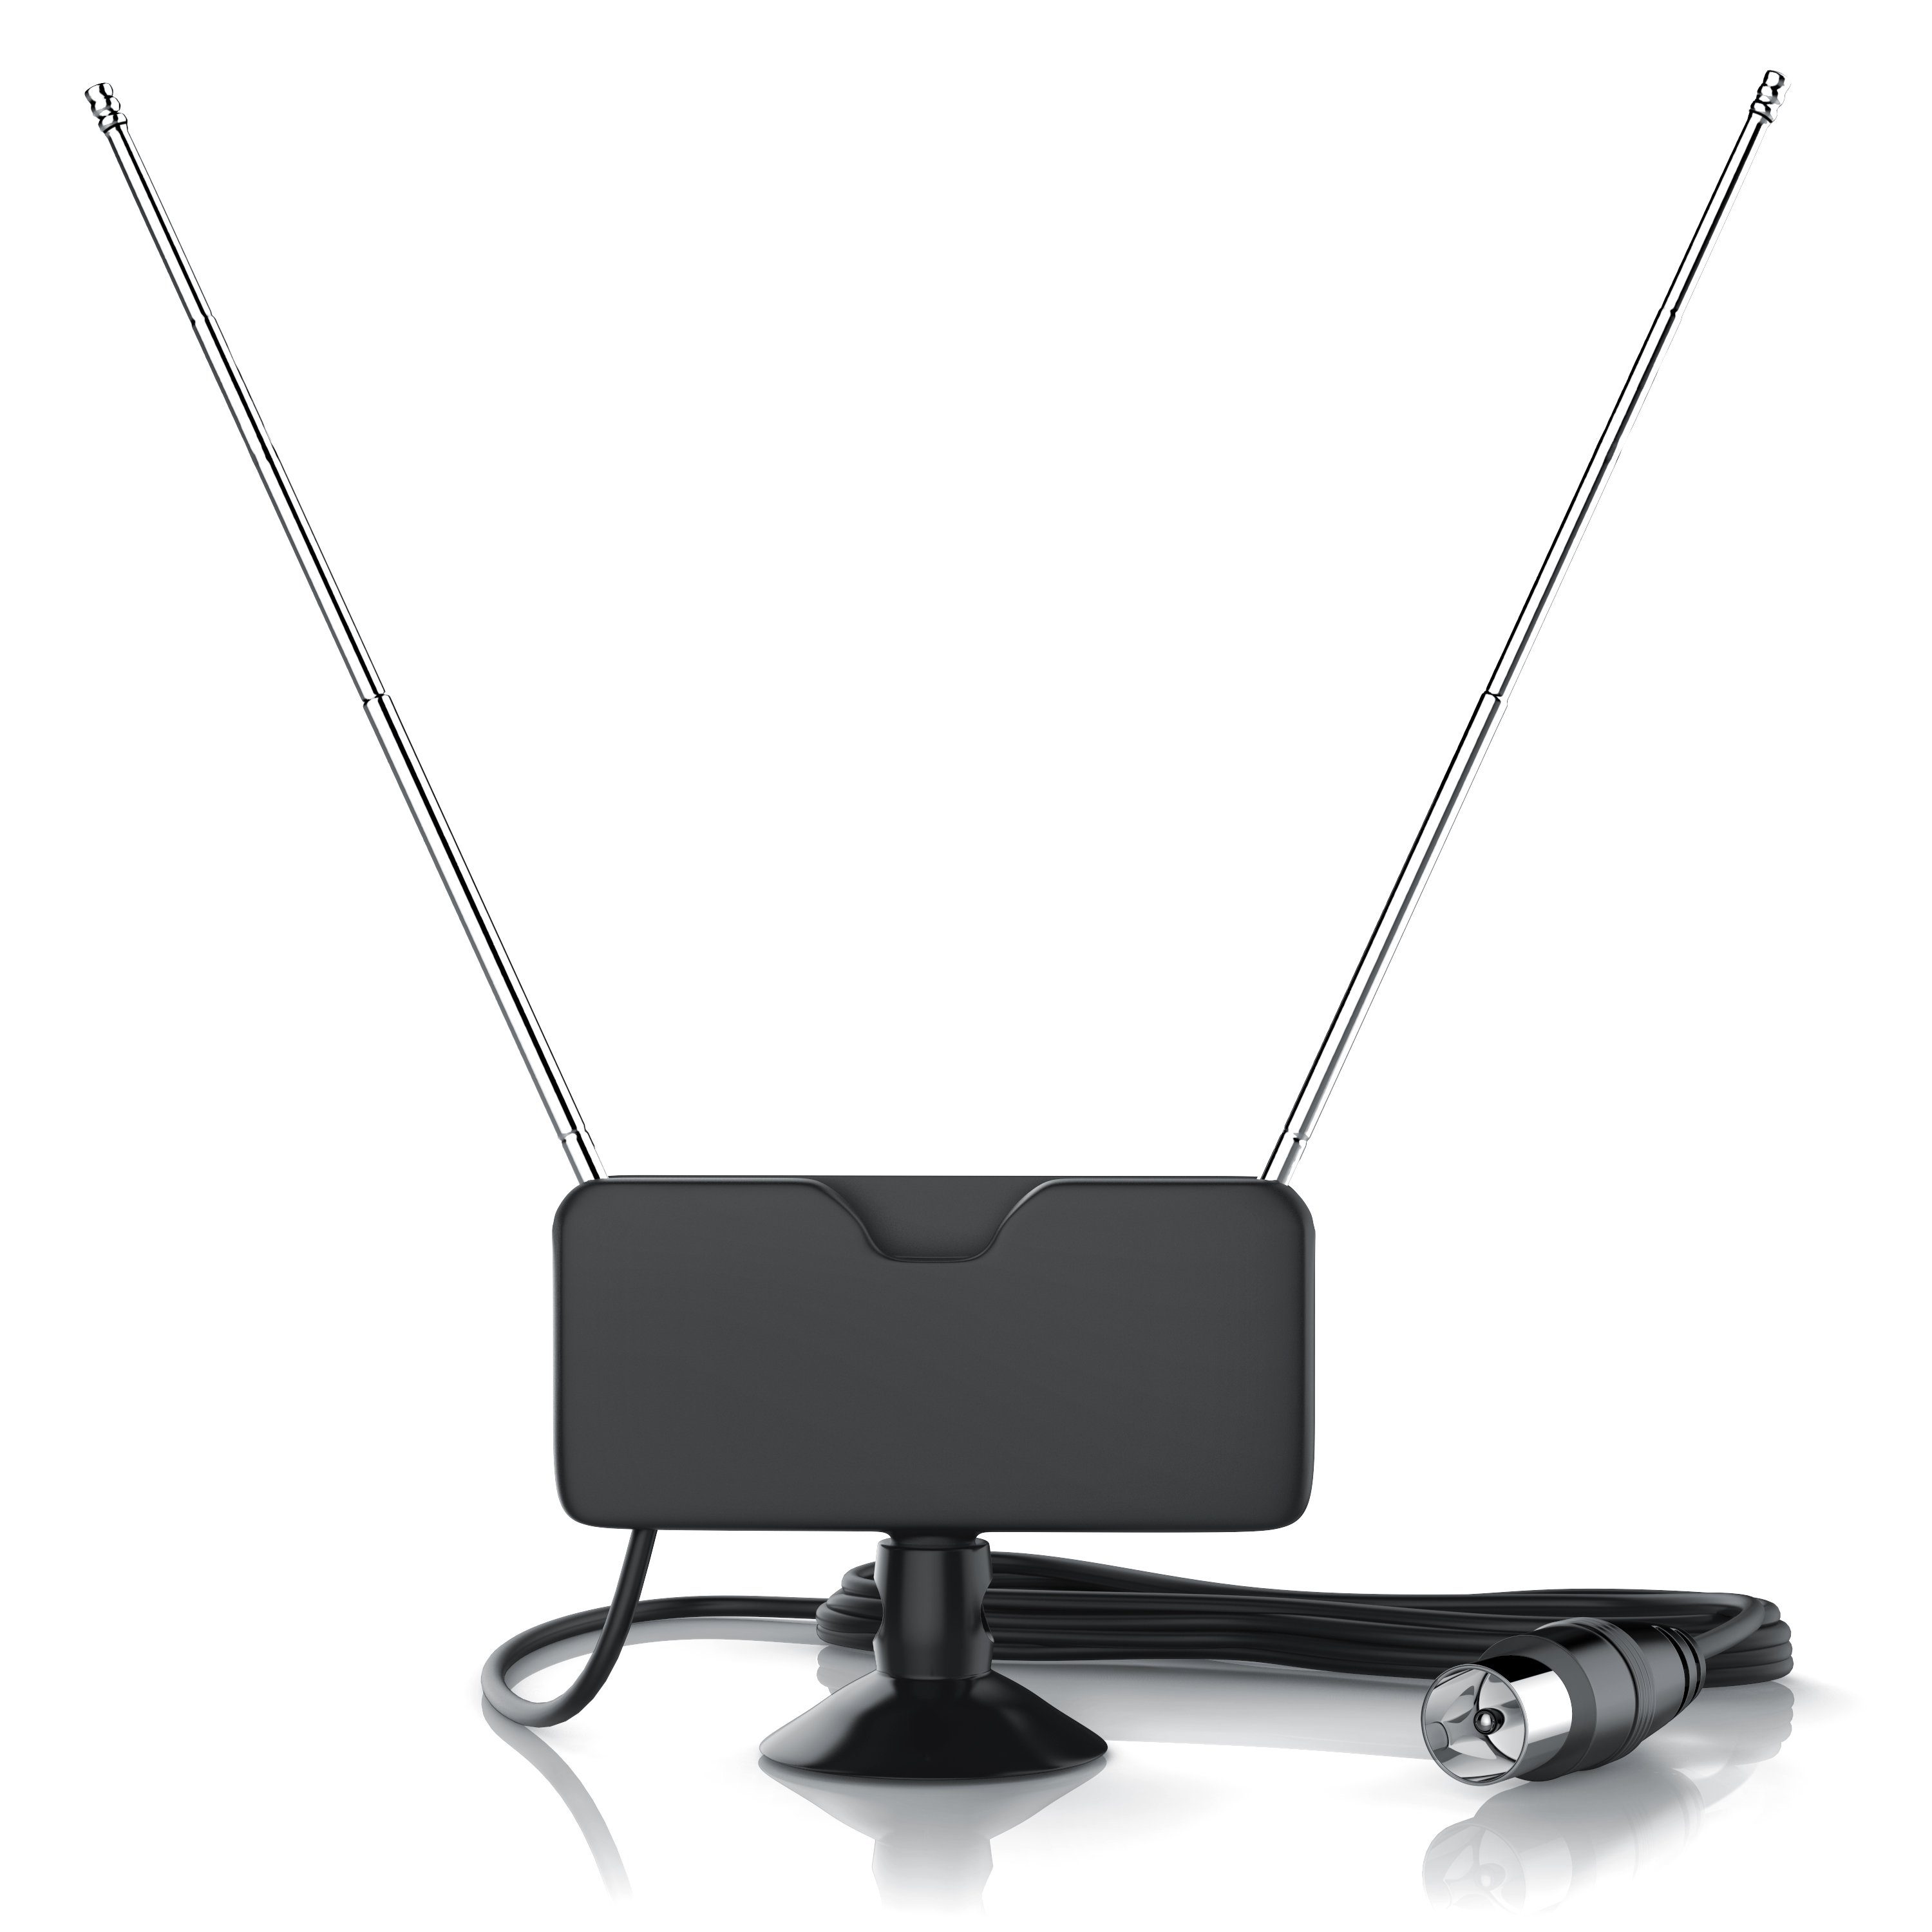 Aplic Stabantenne (DVB-T, DVB-T2, für Innenbereich), digitale DVBT Antenne,  2 Teleskopantennen, Starker Empfang